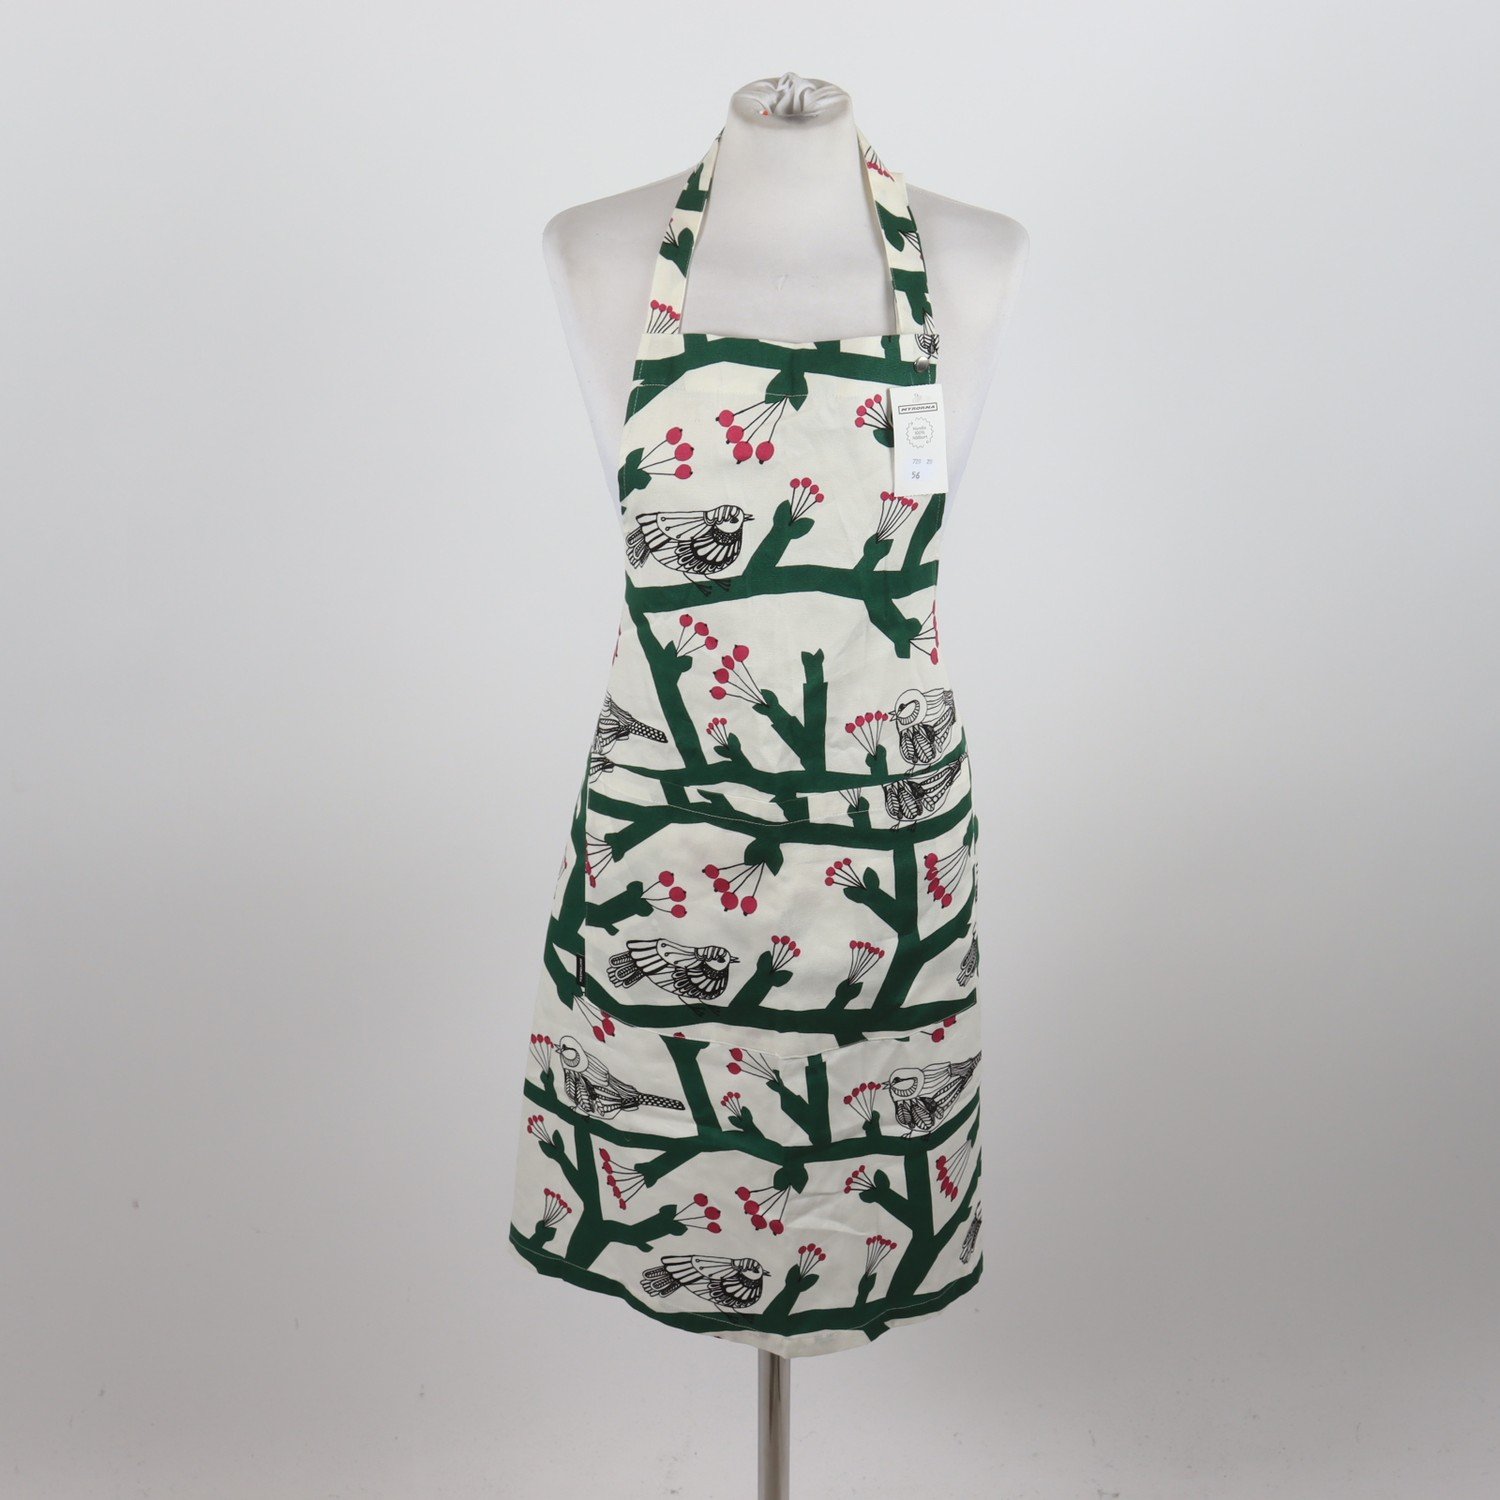 Förkläde, Marimekko, mönstrad, stl. One Size